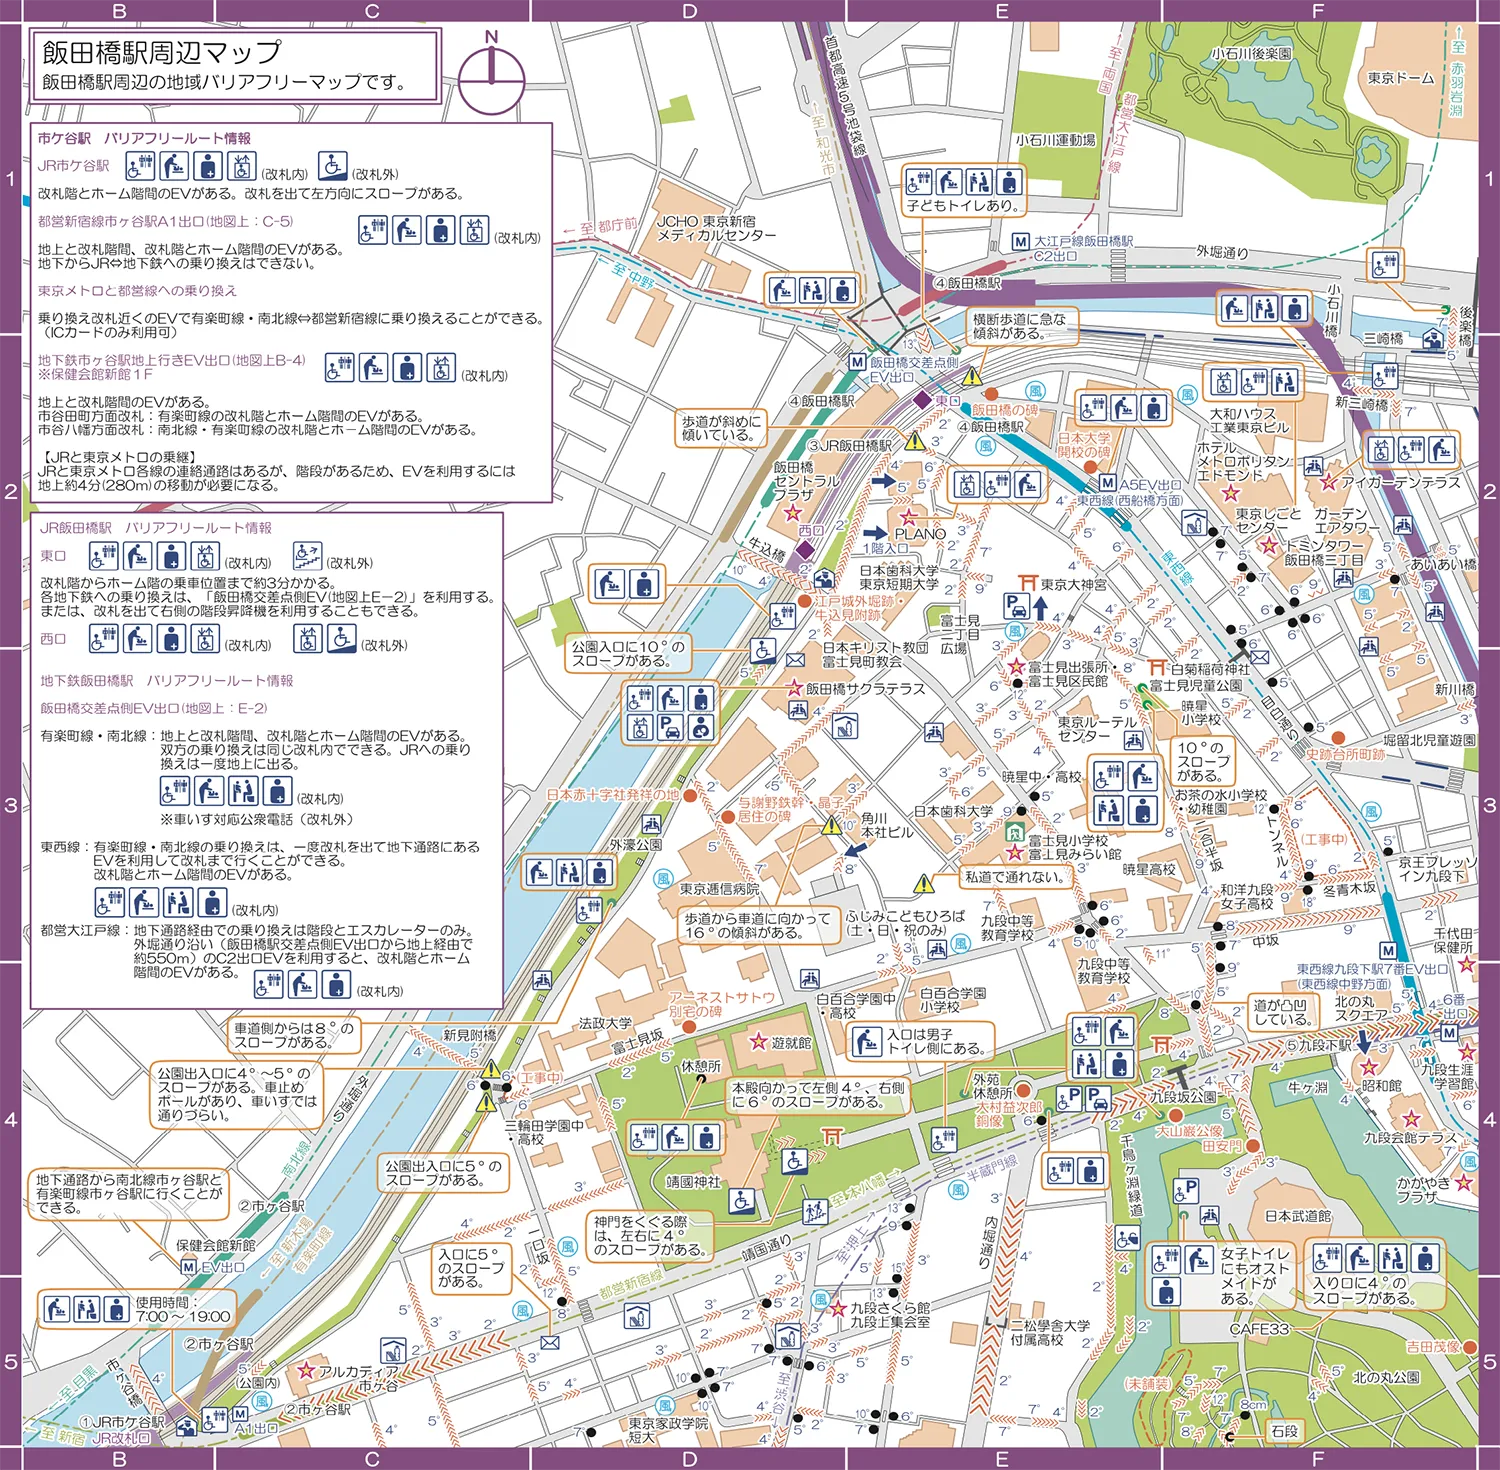 飯田橋駅周辺マップマップ